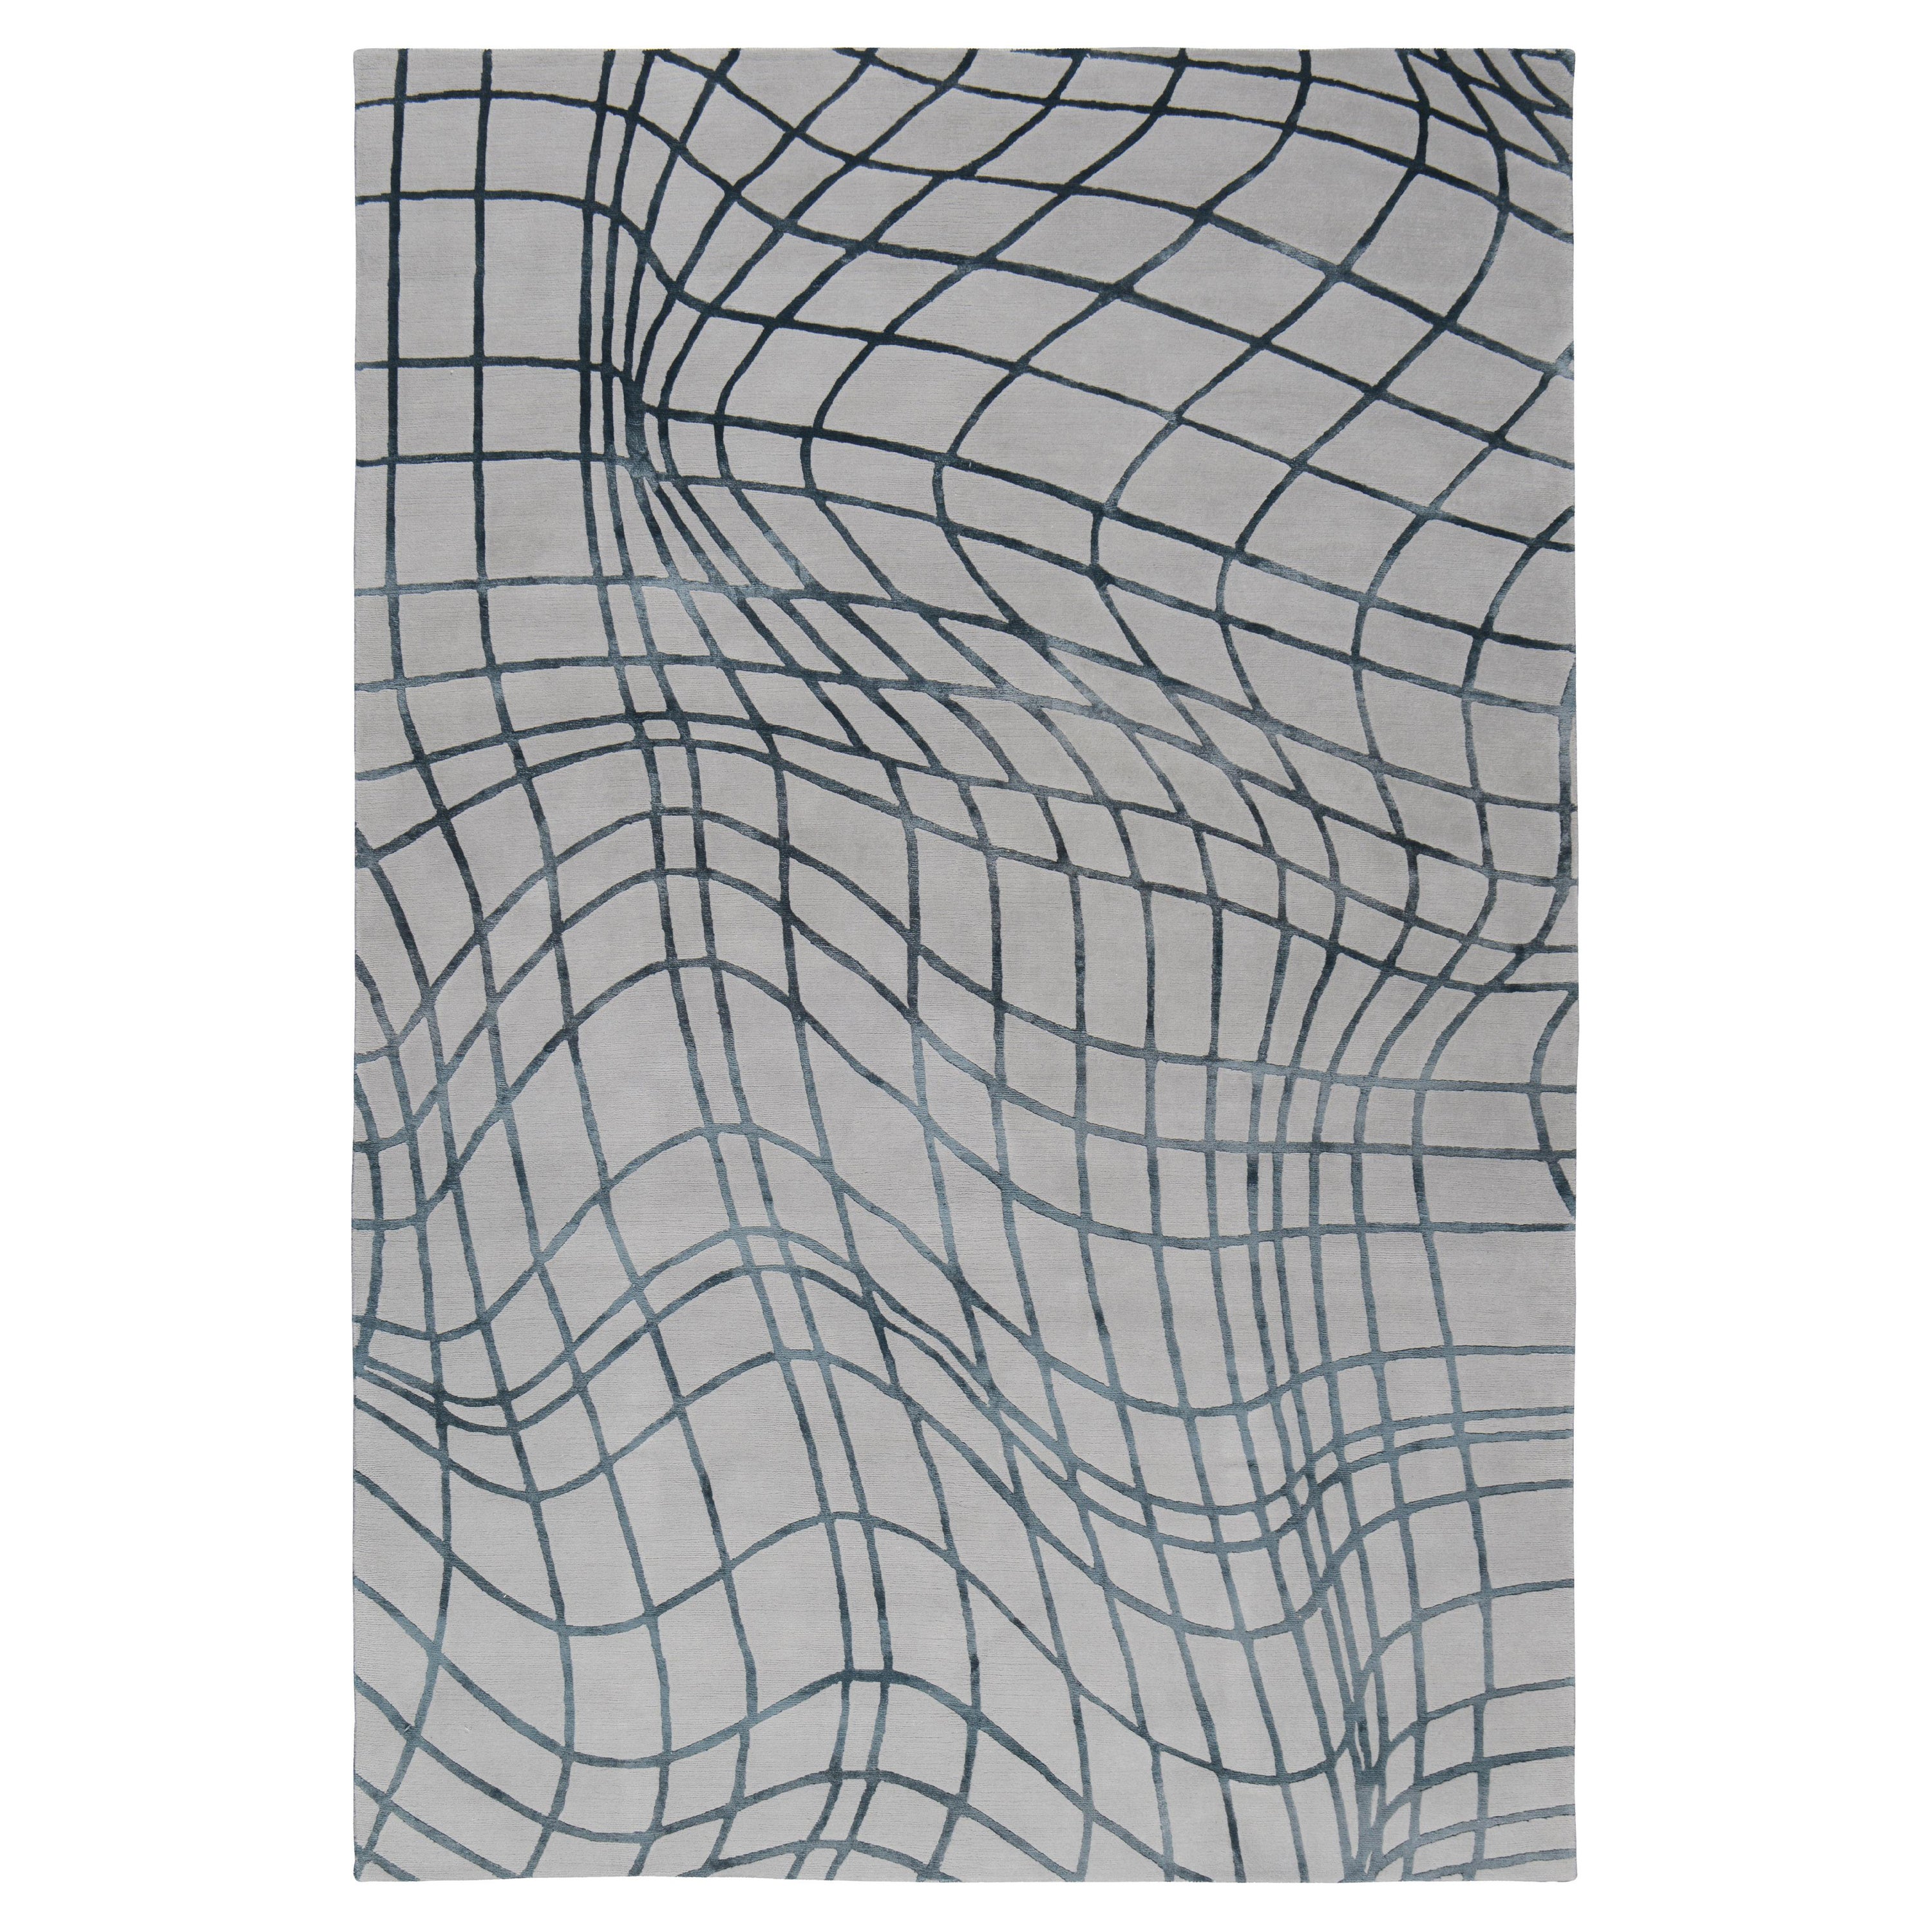 Wavelength zeigt ein verzerrtes Rastermotiv, das von einem 3D-Diagramm inspiriert ist. Der Teppich verwandelt die abstrakten Linien in ein kühnes Motiv, das perfekt ist, um einen Raum zu bereichern. Von unseren erfahrenen Handwerkern in Nepal aus